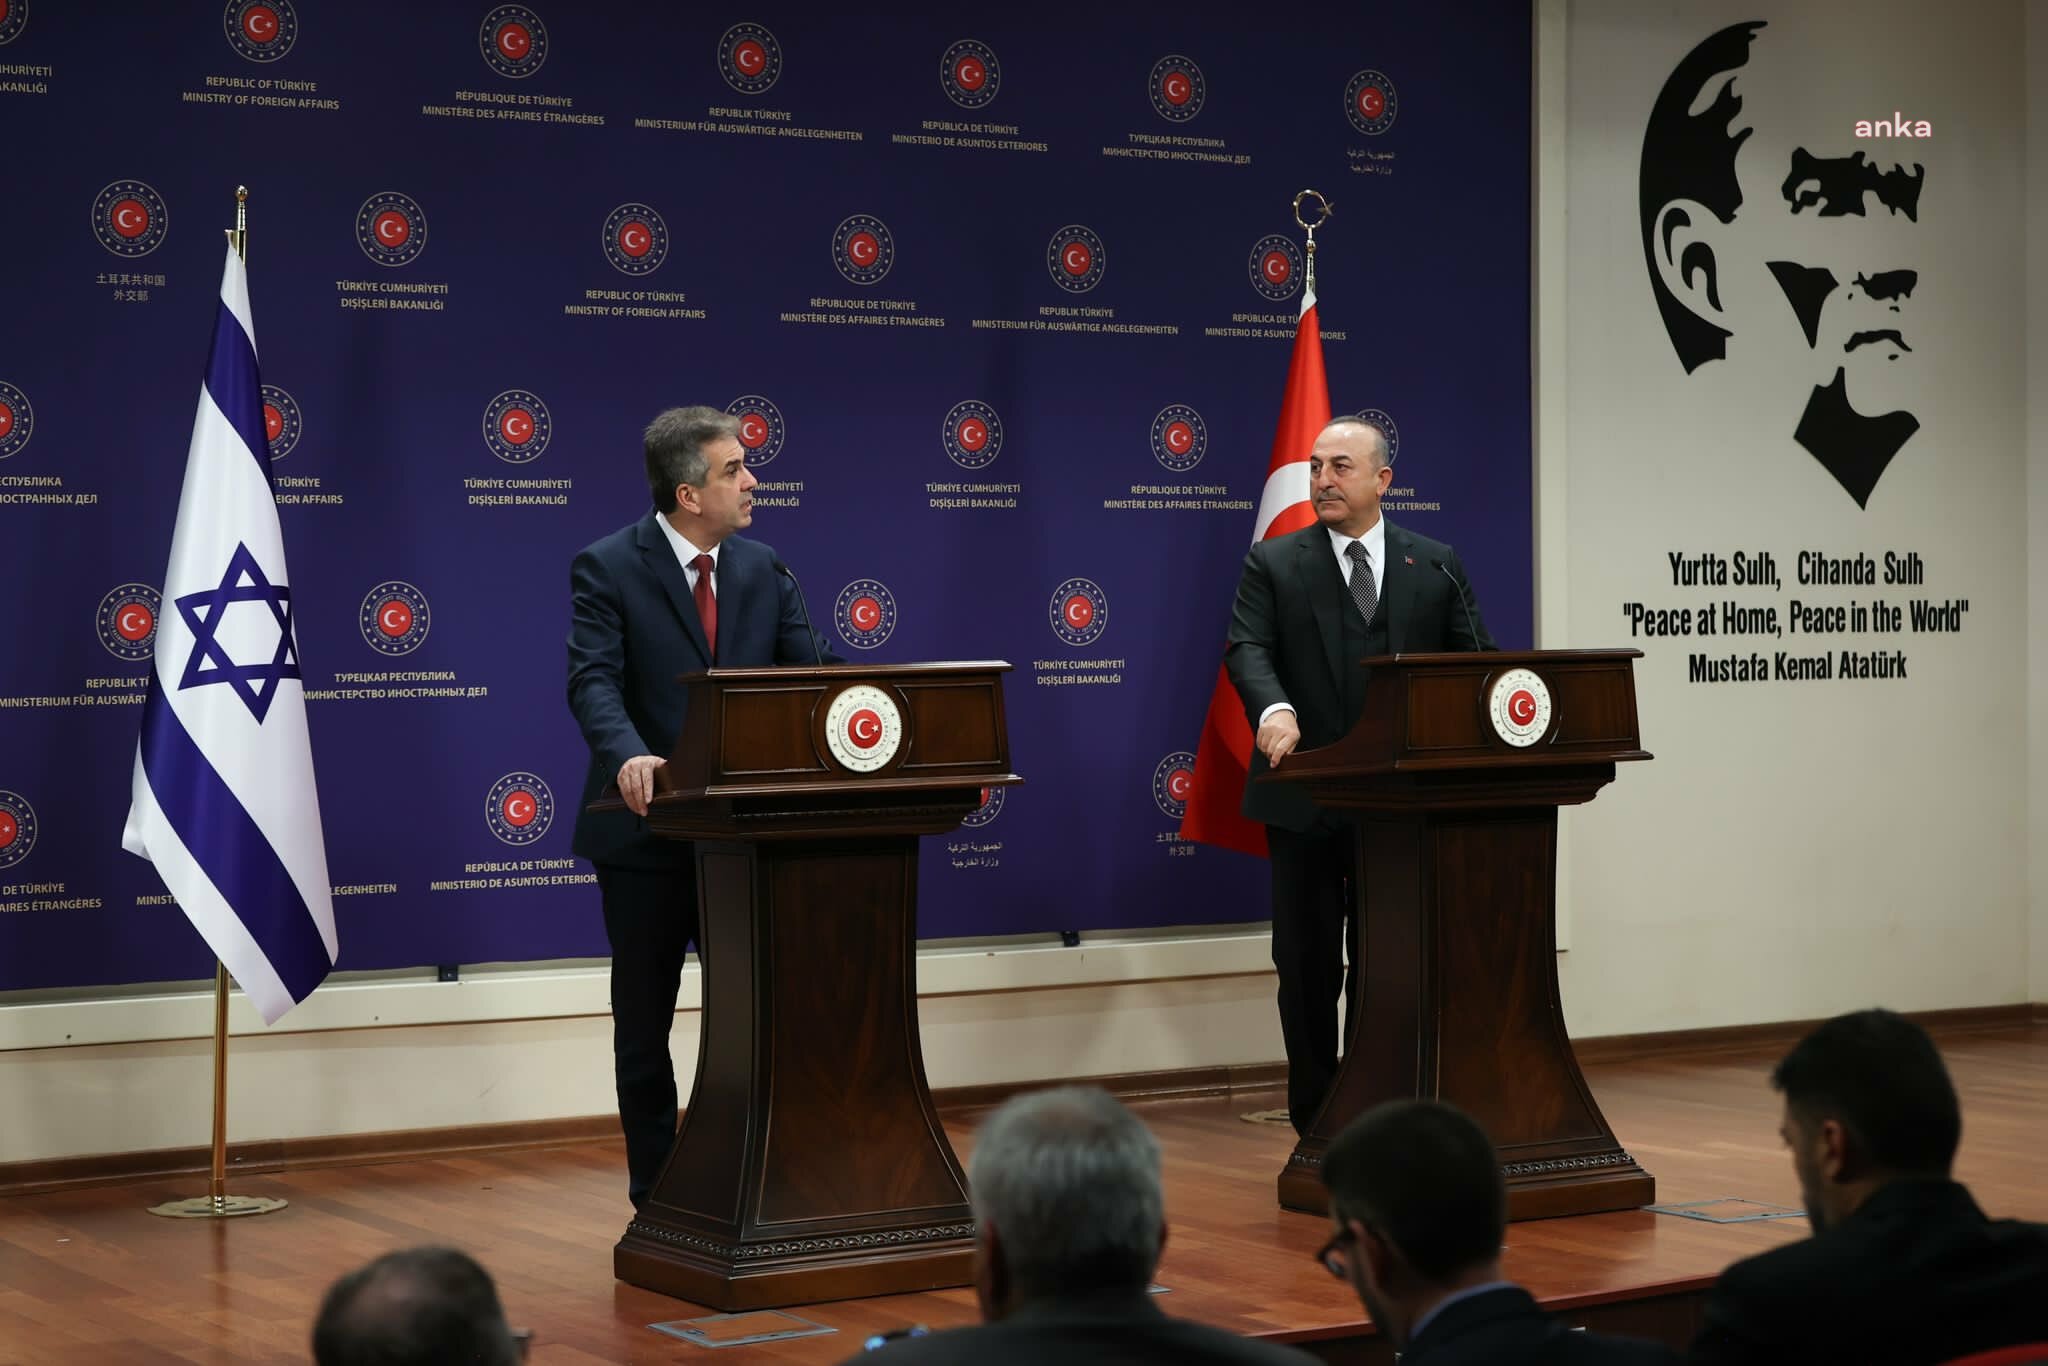 Mevlüt Çavuşoğlu, İsrail Dışişleri Bakanı Eli Cohen ile görüştü